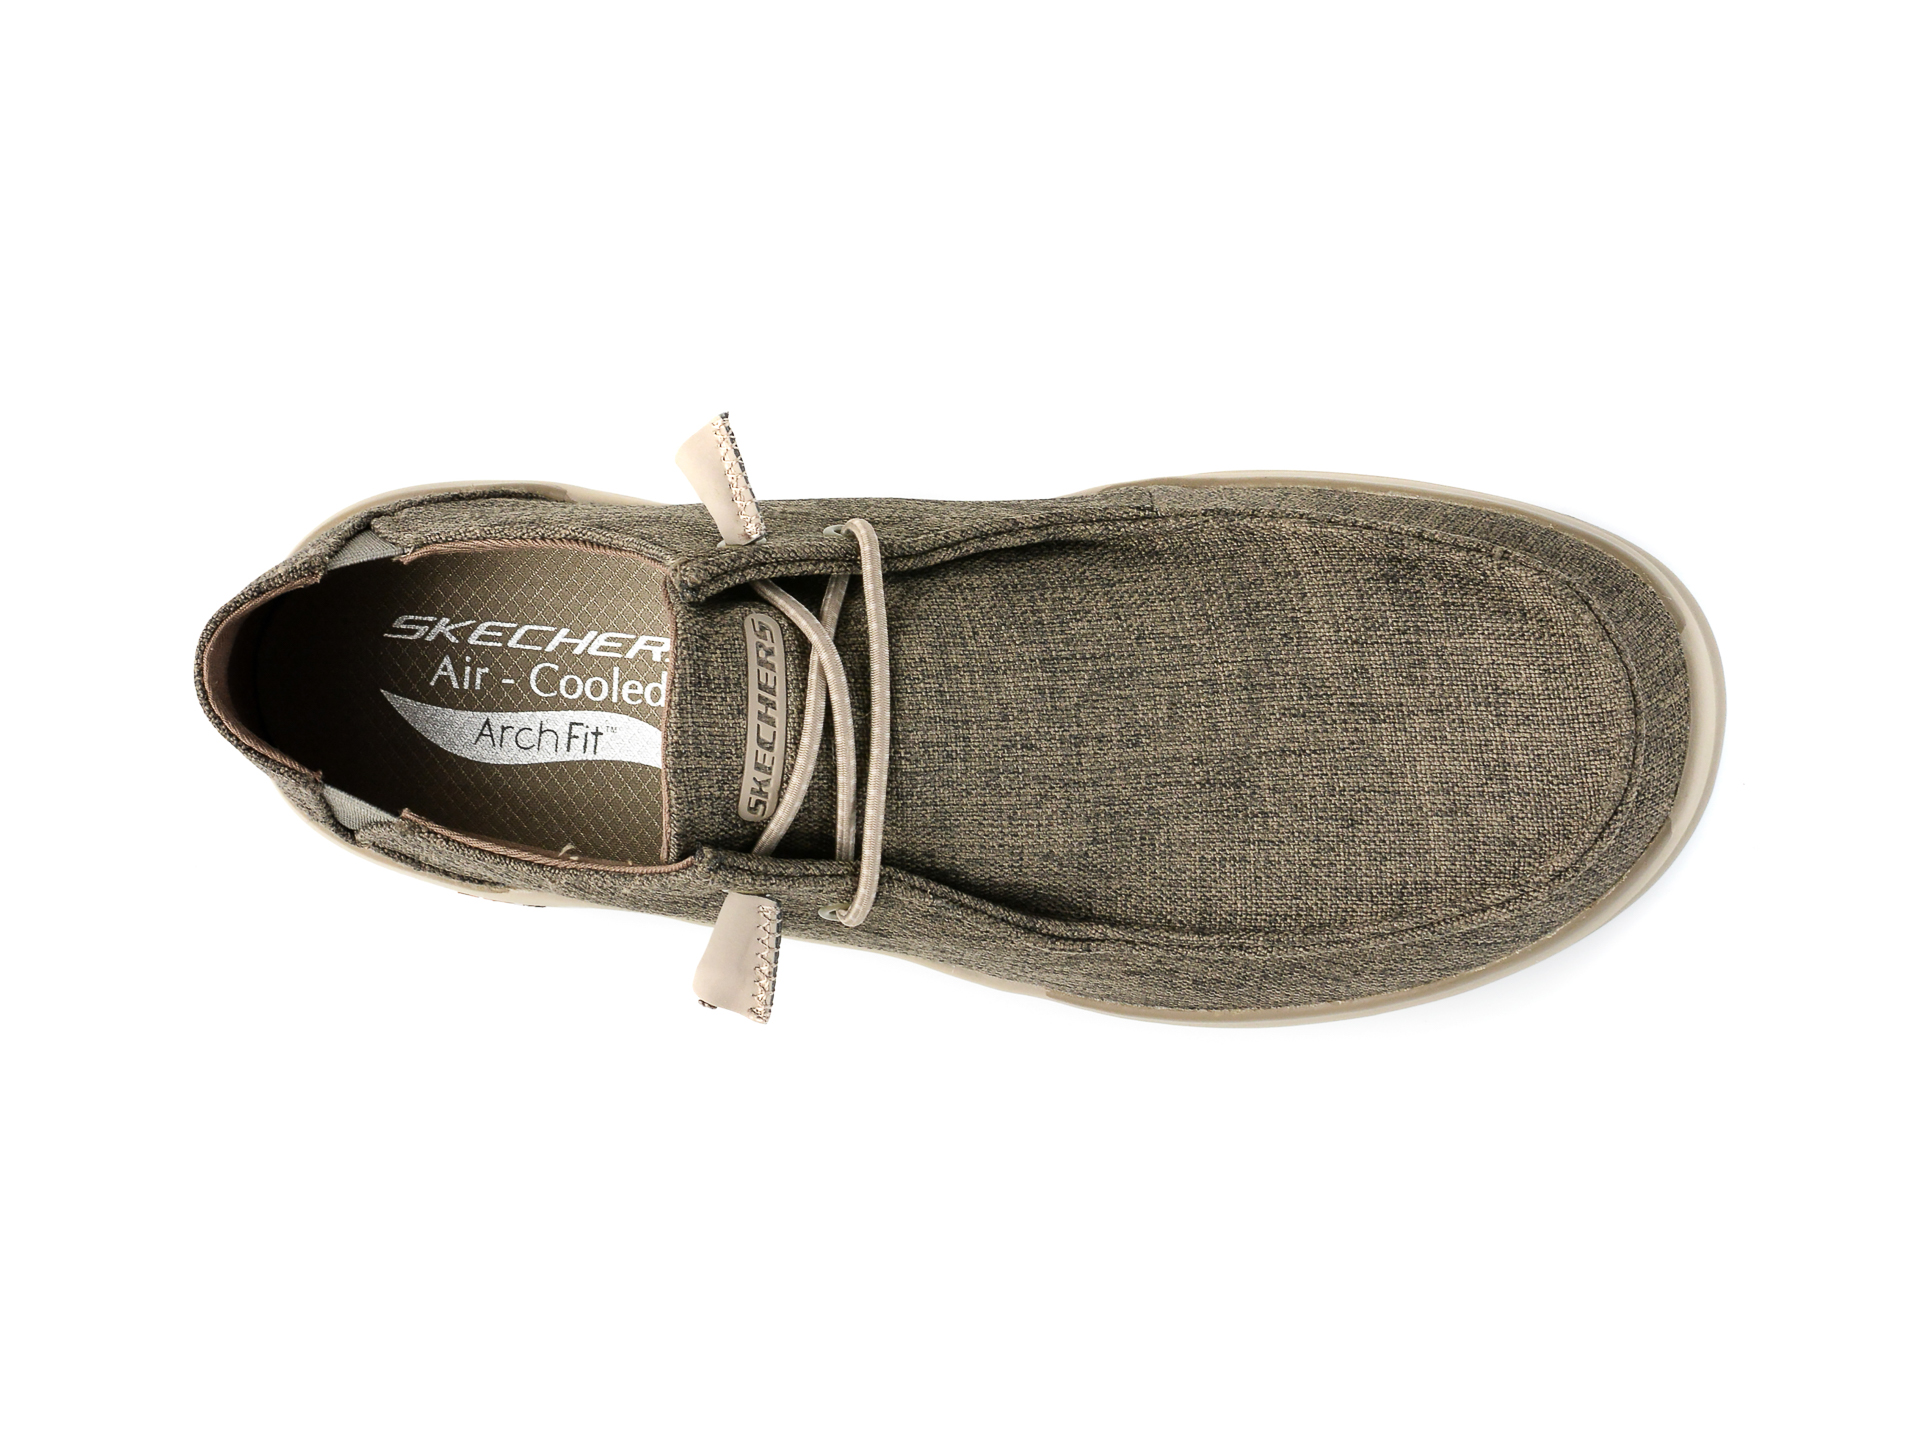 Poze Pantofi SKECHERS gri, ARCH FIT, din material textil tezyo.ro